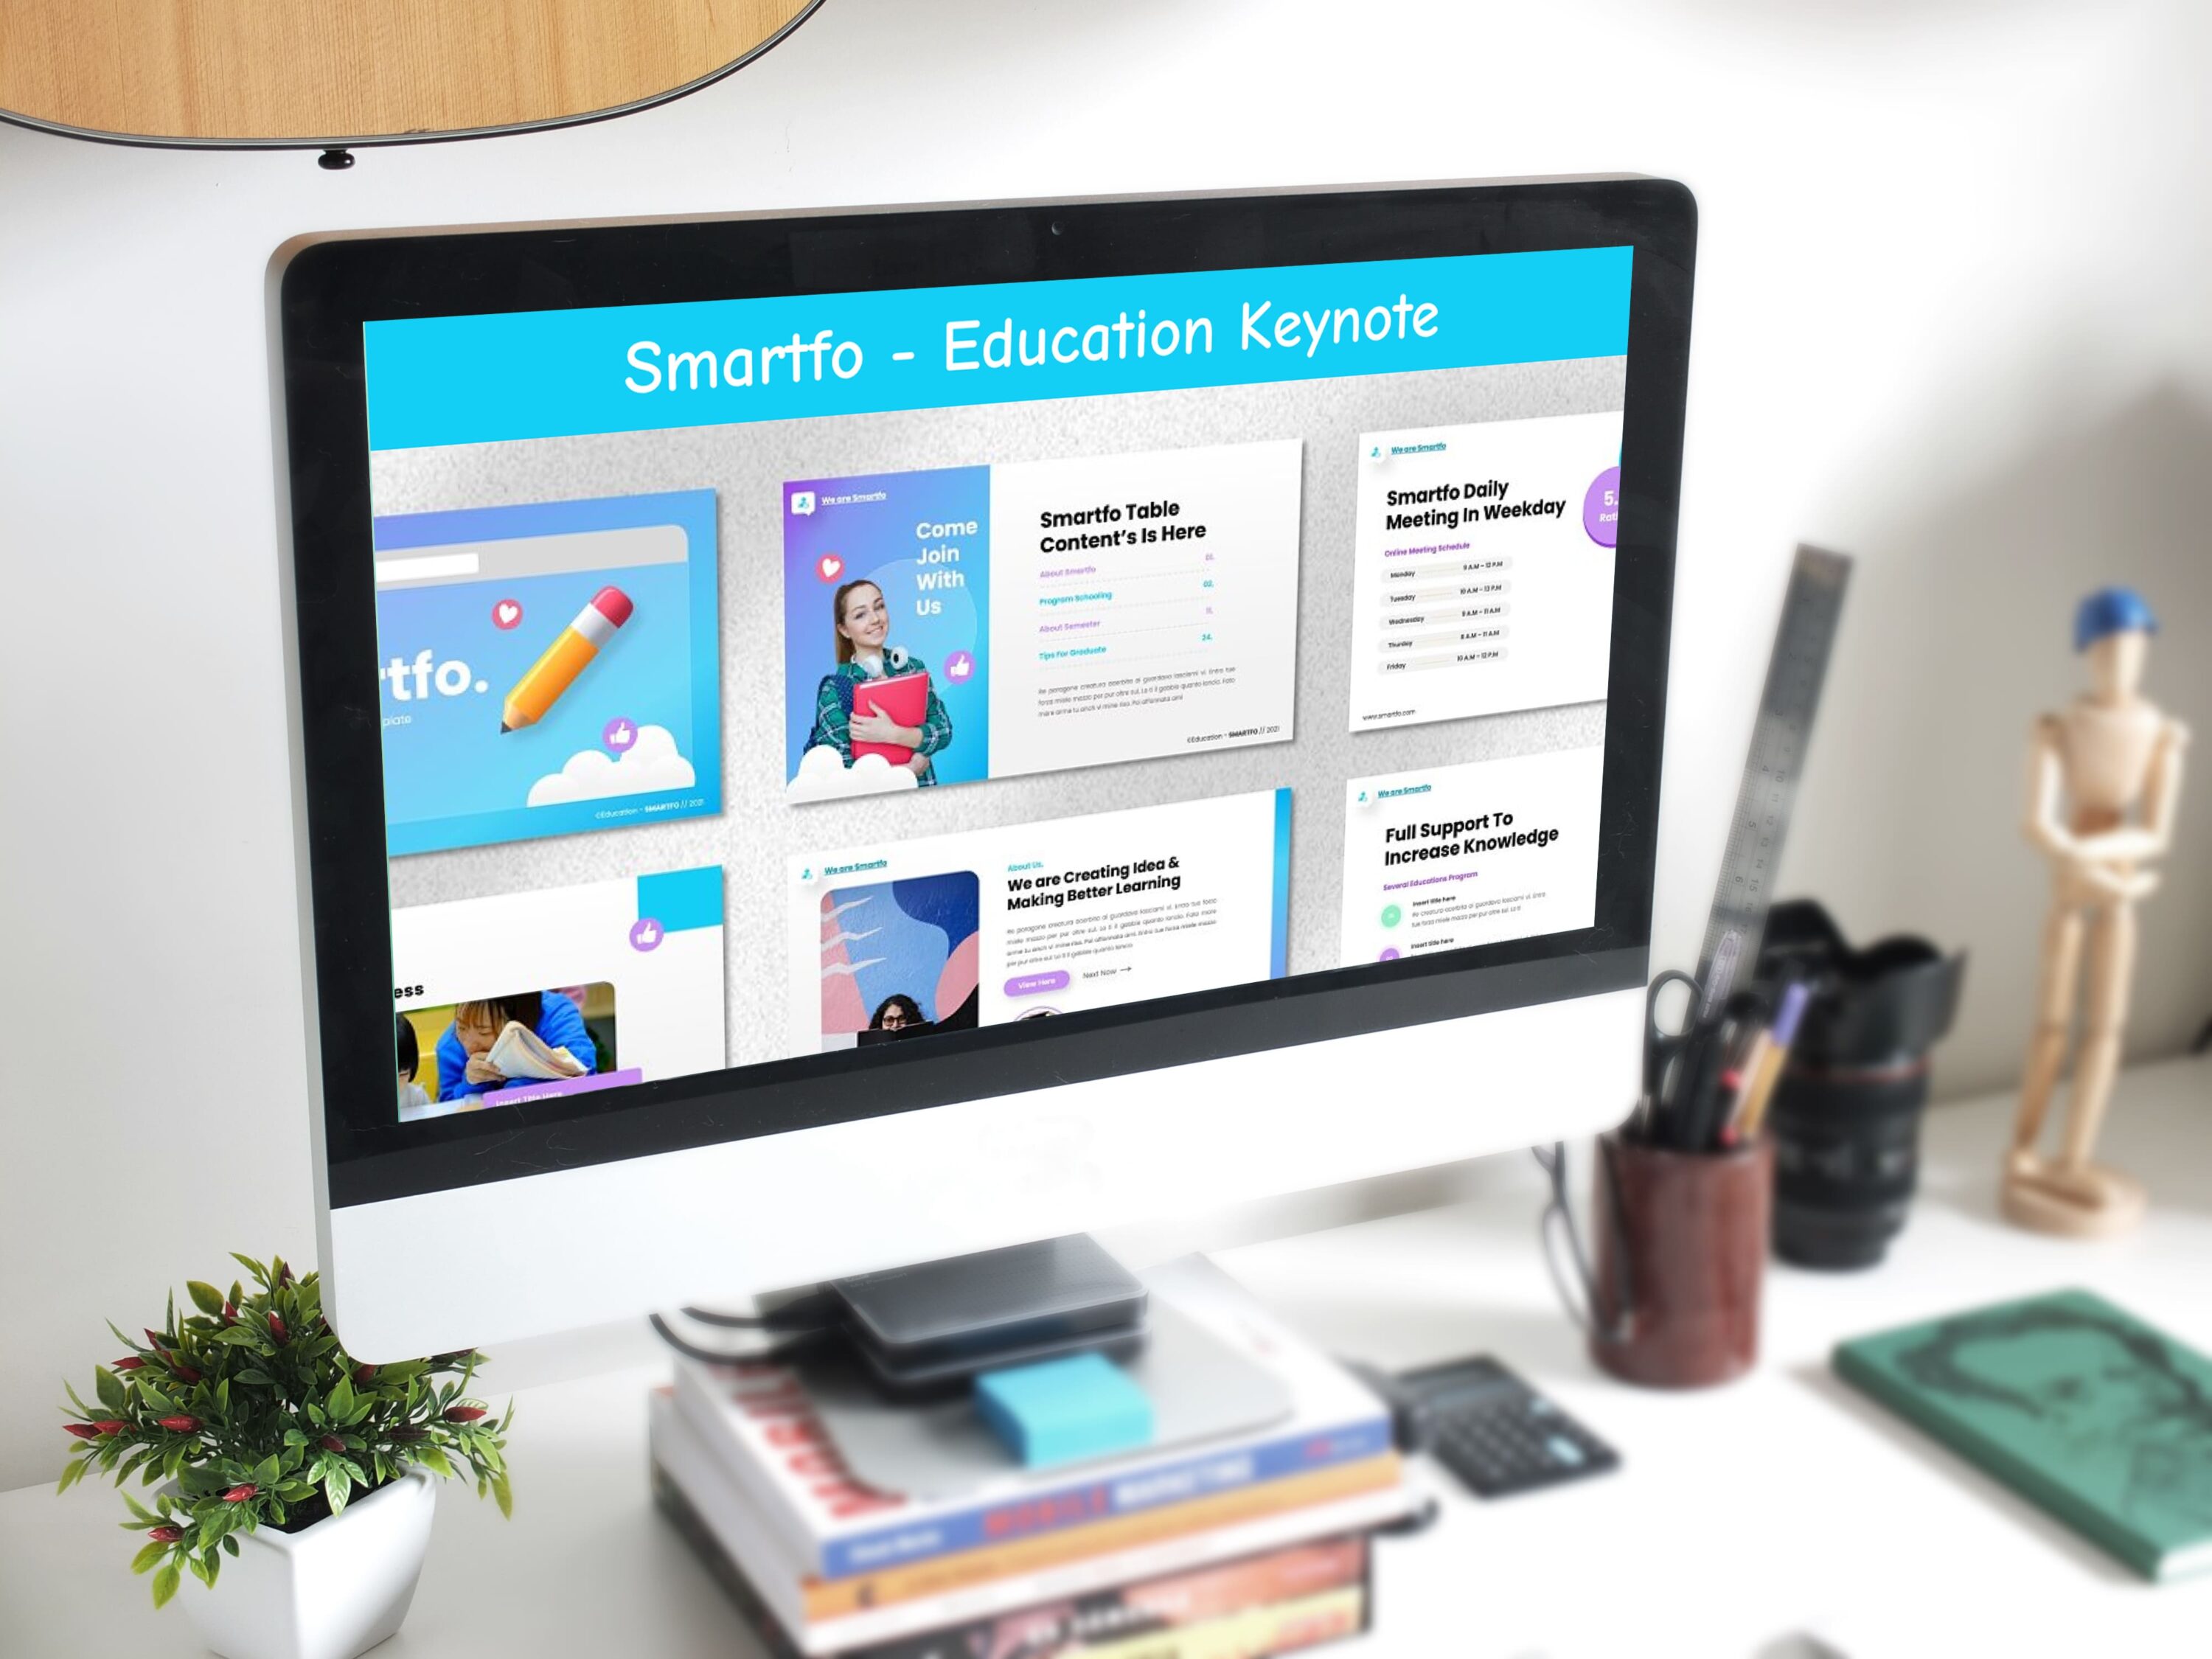 Smartfo - Education Keynote - desktop.